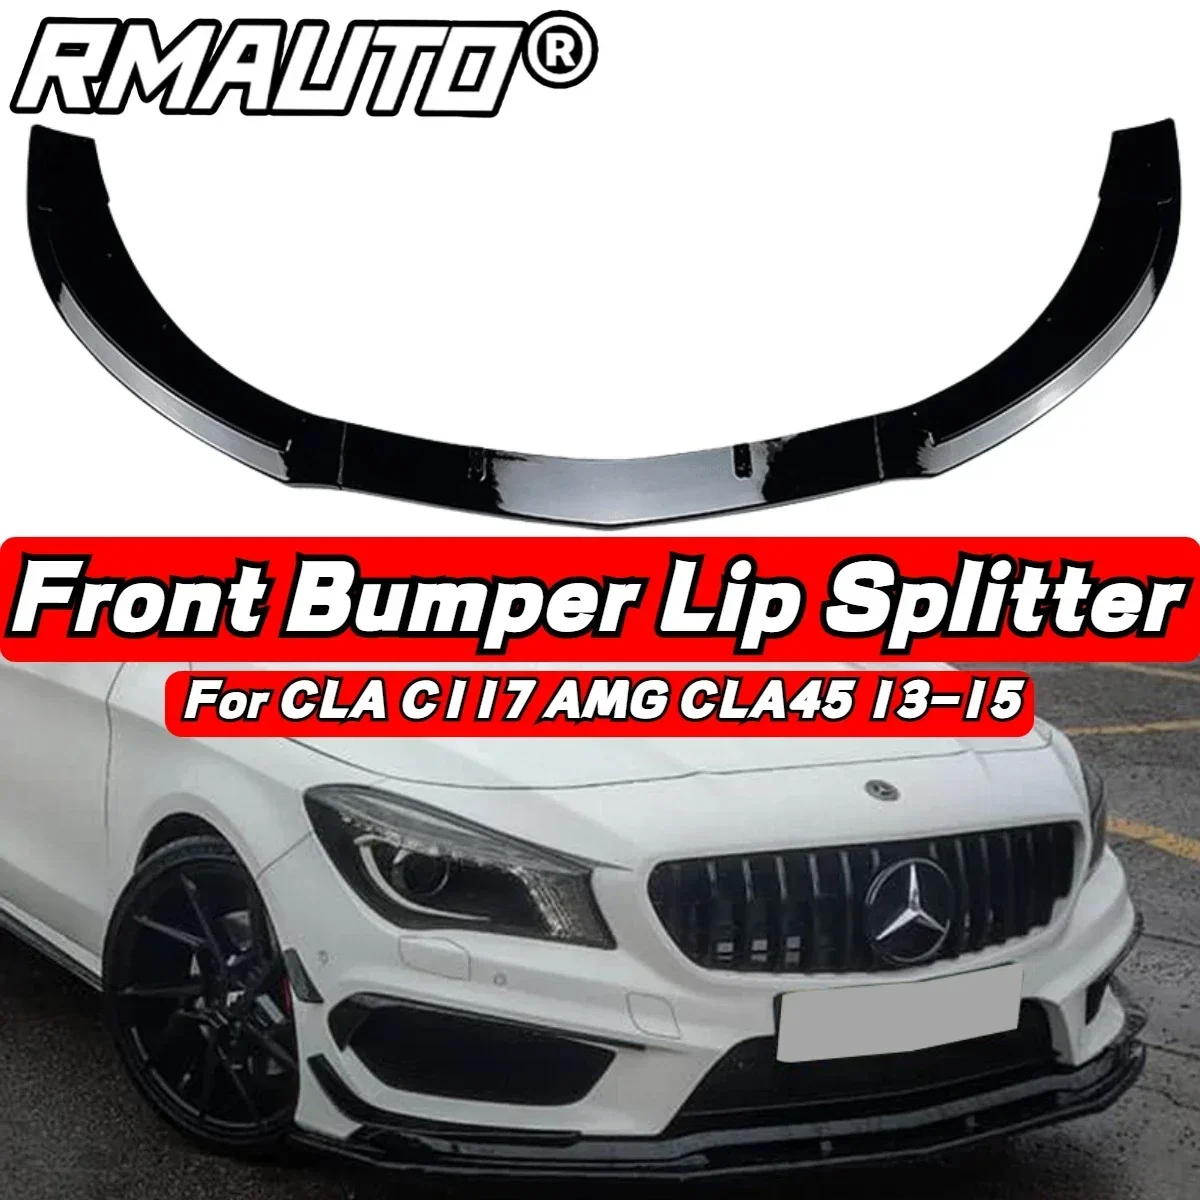 

3Pcs Car Front Bumper Lip Diffuser Spoiler Bumper Guard For Mercedes Benz CLA C117 AMG CLA45 2013-2015 Car Accessories Body Kit